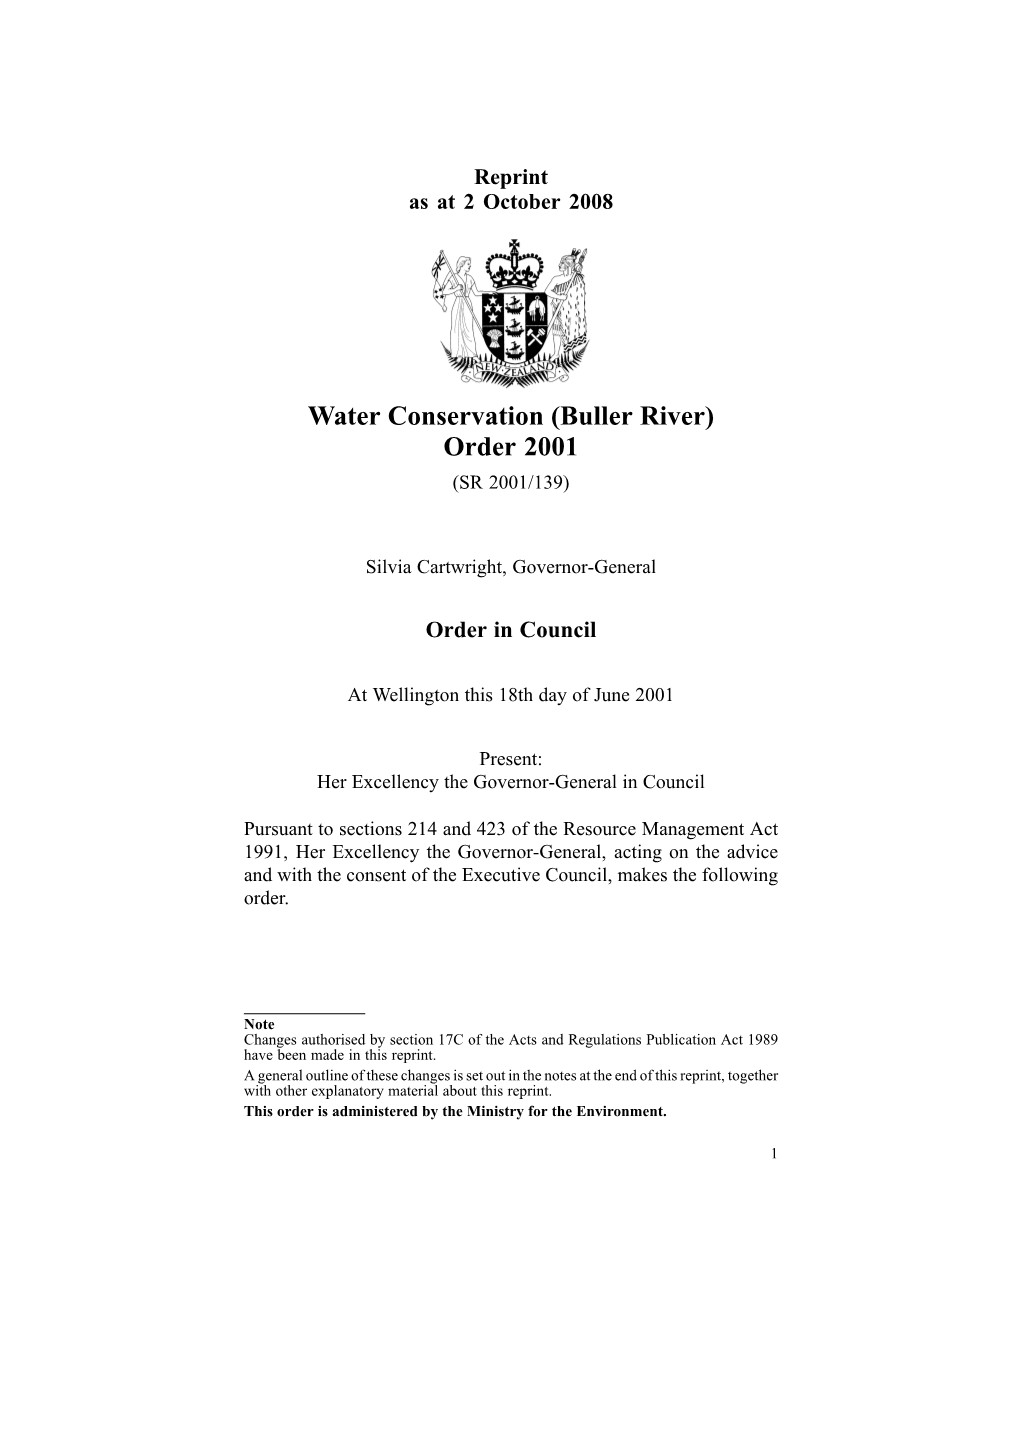 Water Conservation (Buller River) Order 2001 (SR 2001/139)